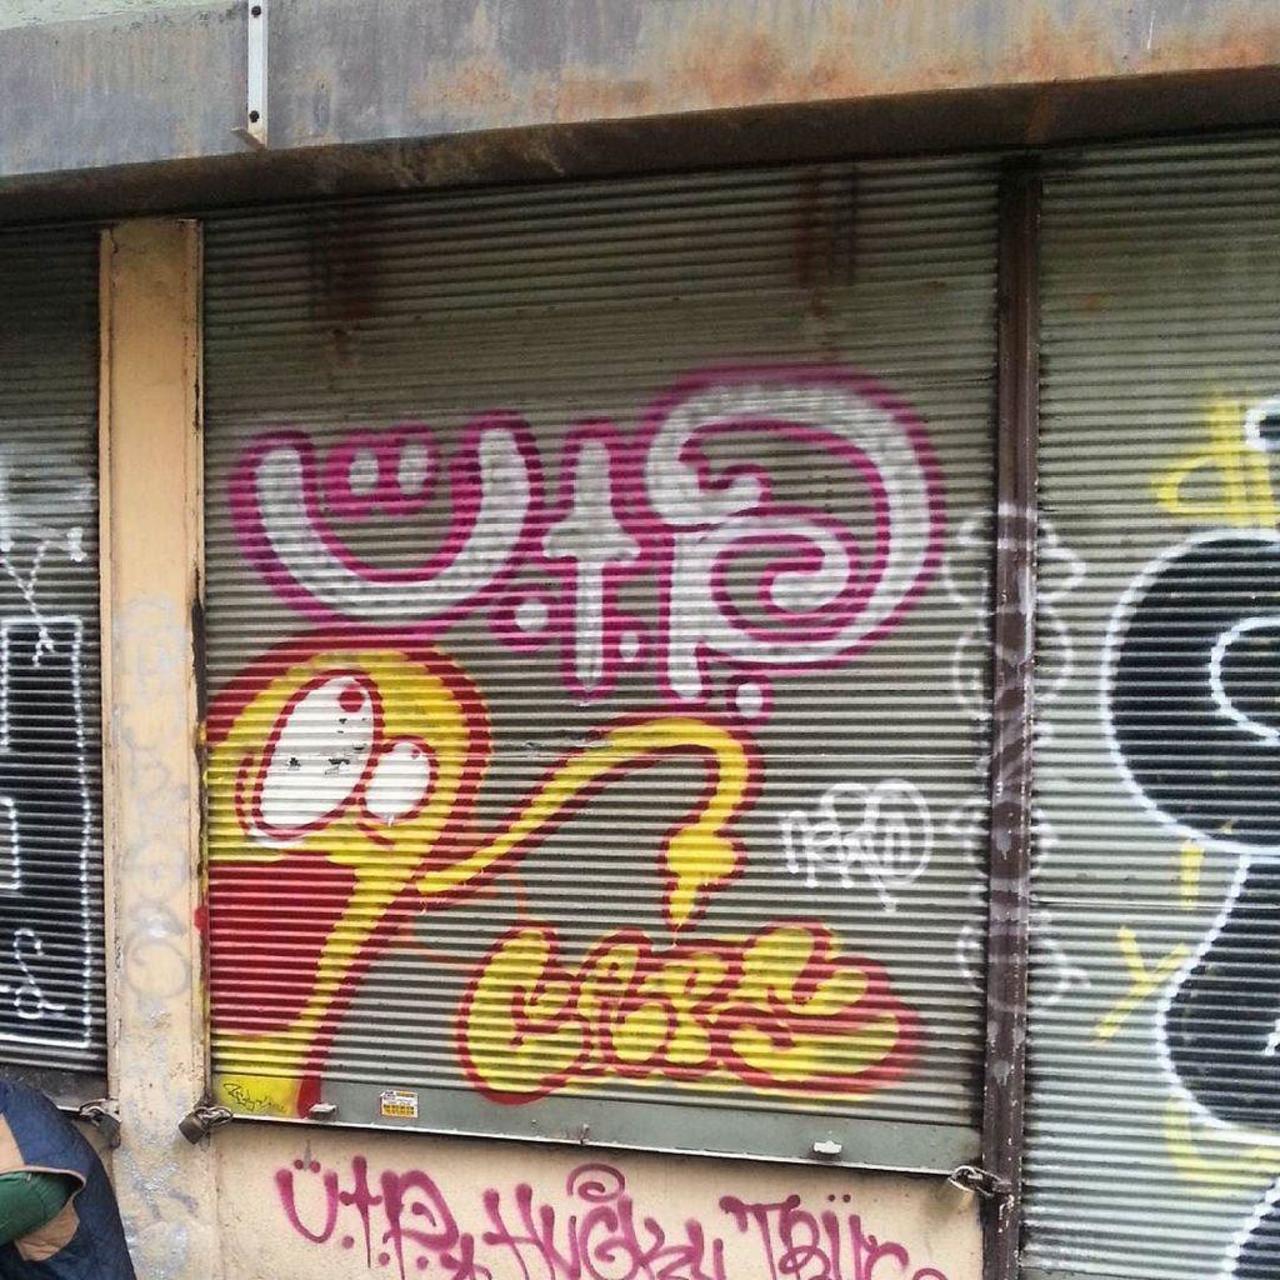 #streetart #graffiti #publicart #urbanart #sokaksanatı #streetartistanbul #istanbulstreetart #graffitiart by wallen… http://t.co/7DbgllDEug